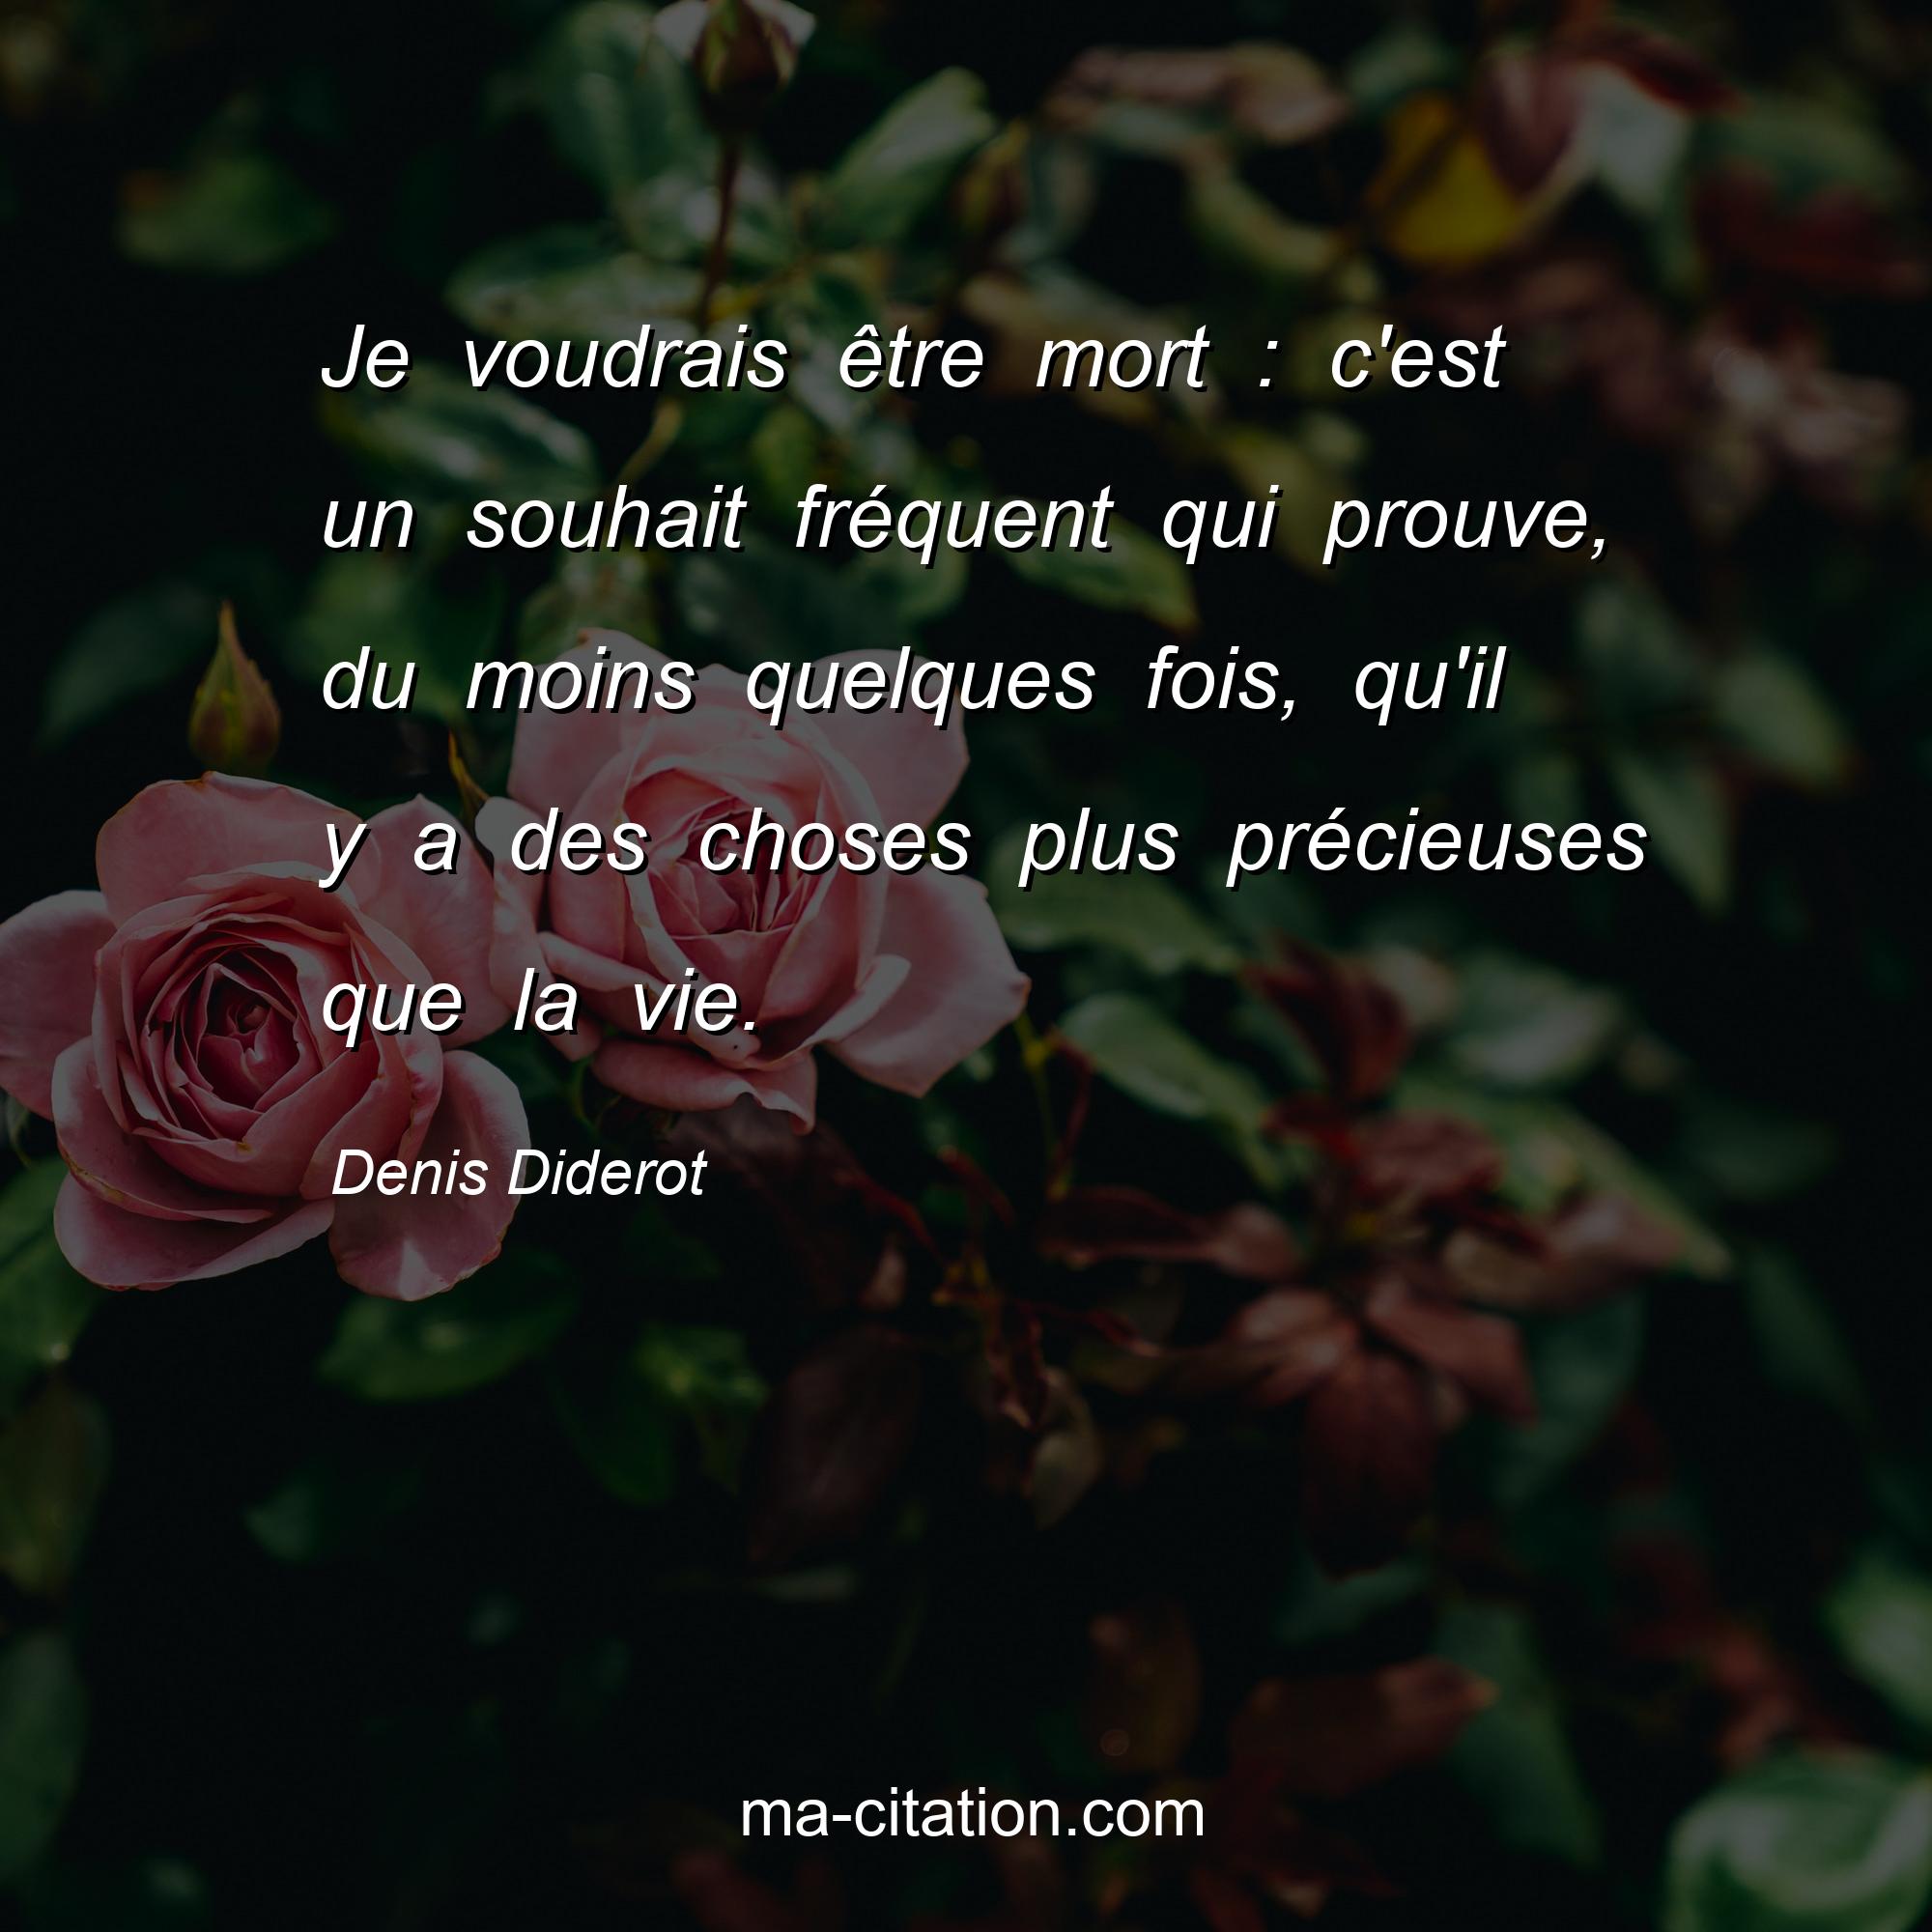 Denis Diderot : Je voudrais être mort : c'est un souhait fréquent qui prouve, du moins quelques fois, qu'il y a des choses plus précieuses que la vie.